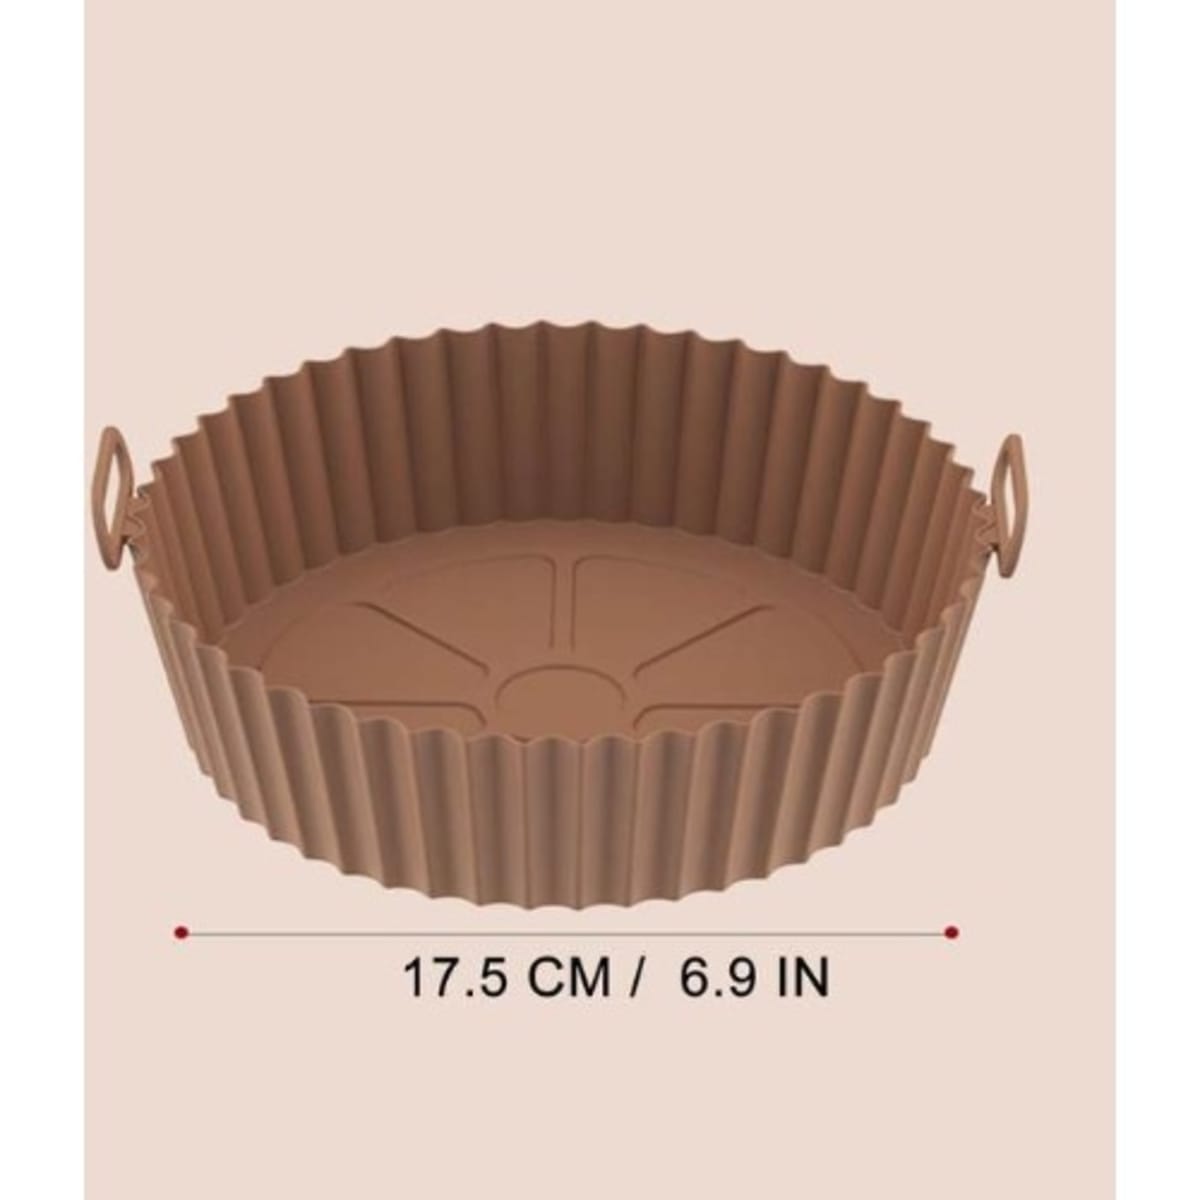 Silicon Reusable Non Stick Air Fryer Baking Pan Tray - 7.5 Inches